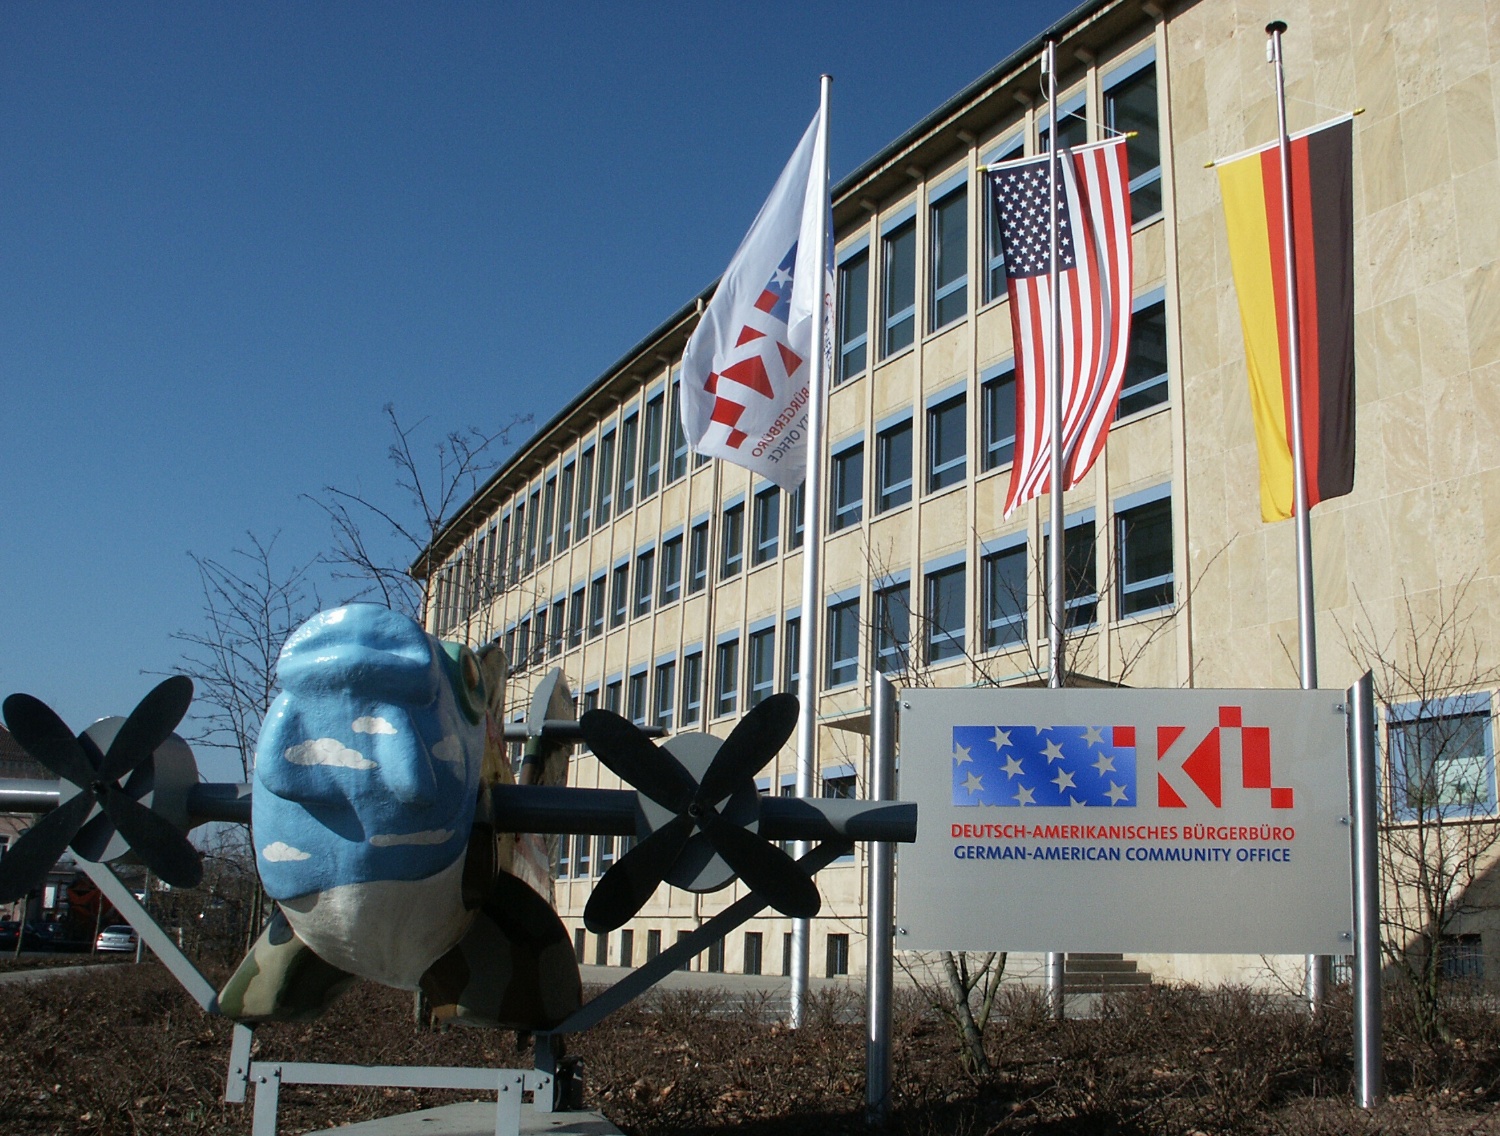 Das rathaus Nord mit dem internationalen Fliegerfisch, dem Deutsch-Amerikanischen Bürgerbüro Schild und gehissten Flaggen deutscher und amerikanischer Nationalität.